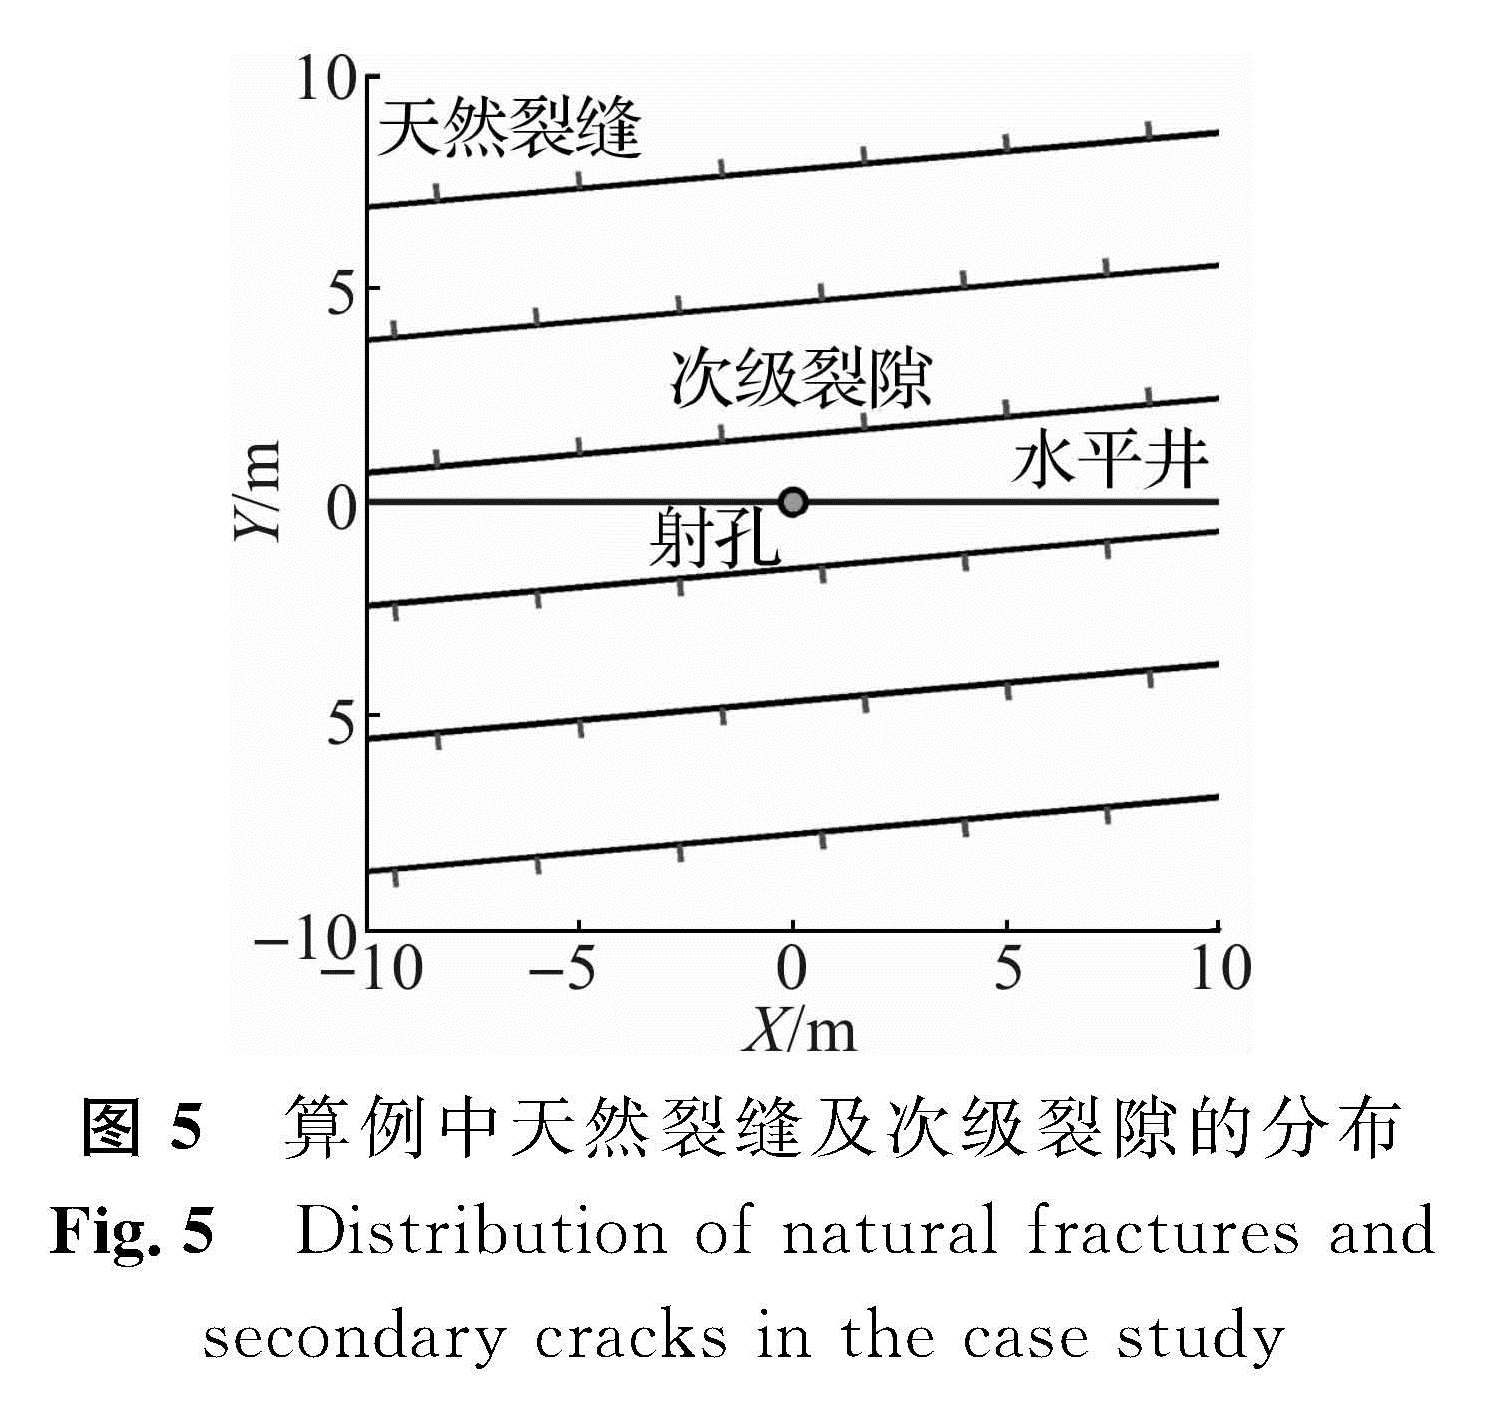 图5 算例中天然裂缝及次级裂隙的分布<br/>Fig.5 Distribution of natural fractures and secondary cracks in the case study